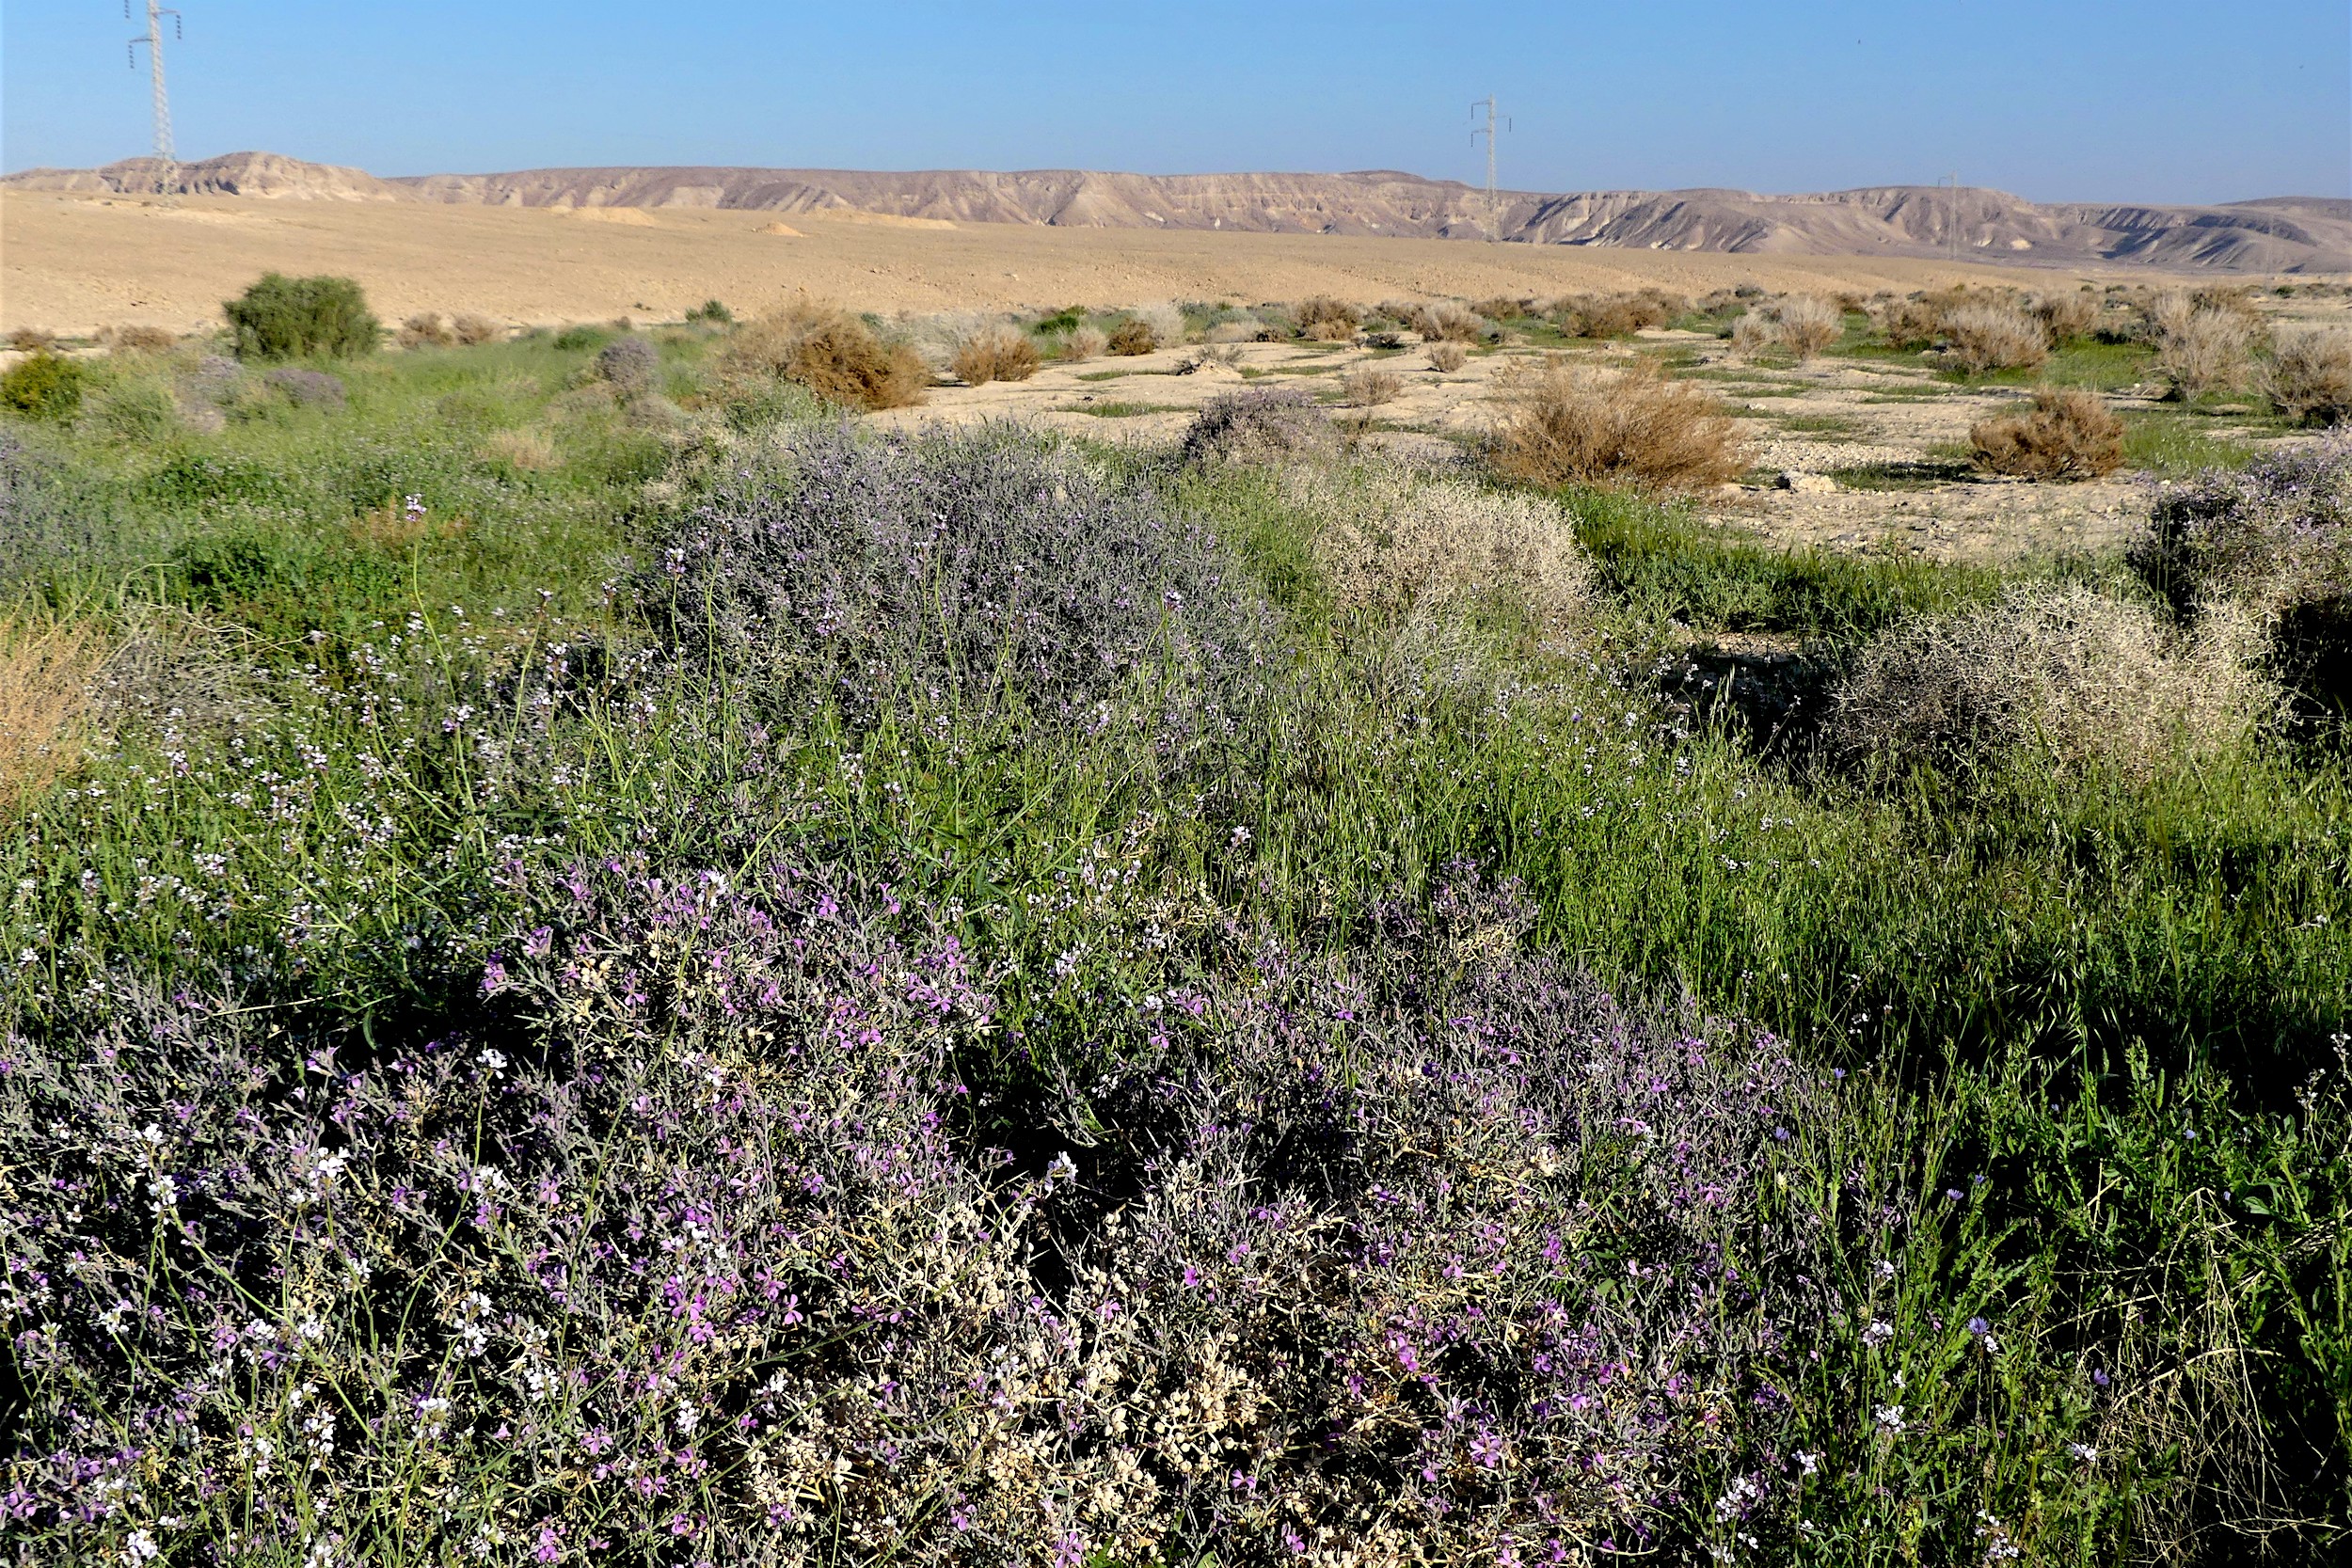 Cette année, le désert était particulièrement vert et fleuri, ce qui offre une grande disponibilité de nourriture aux oiseaux migrateurs